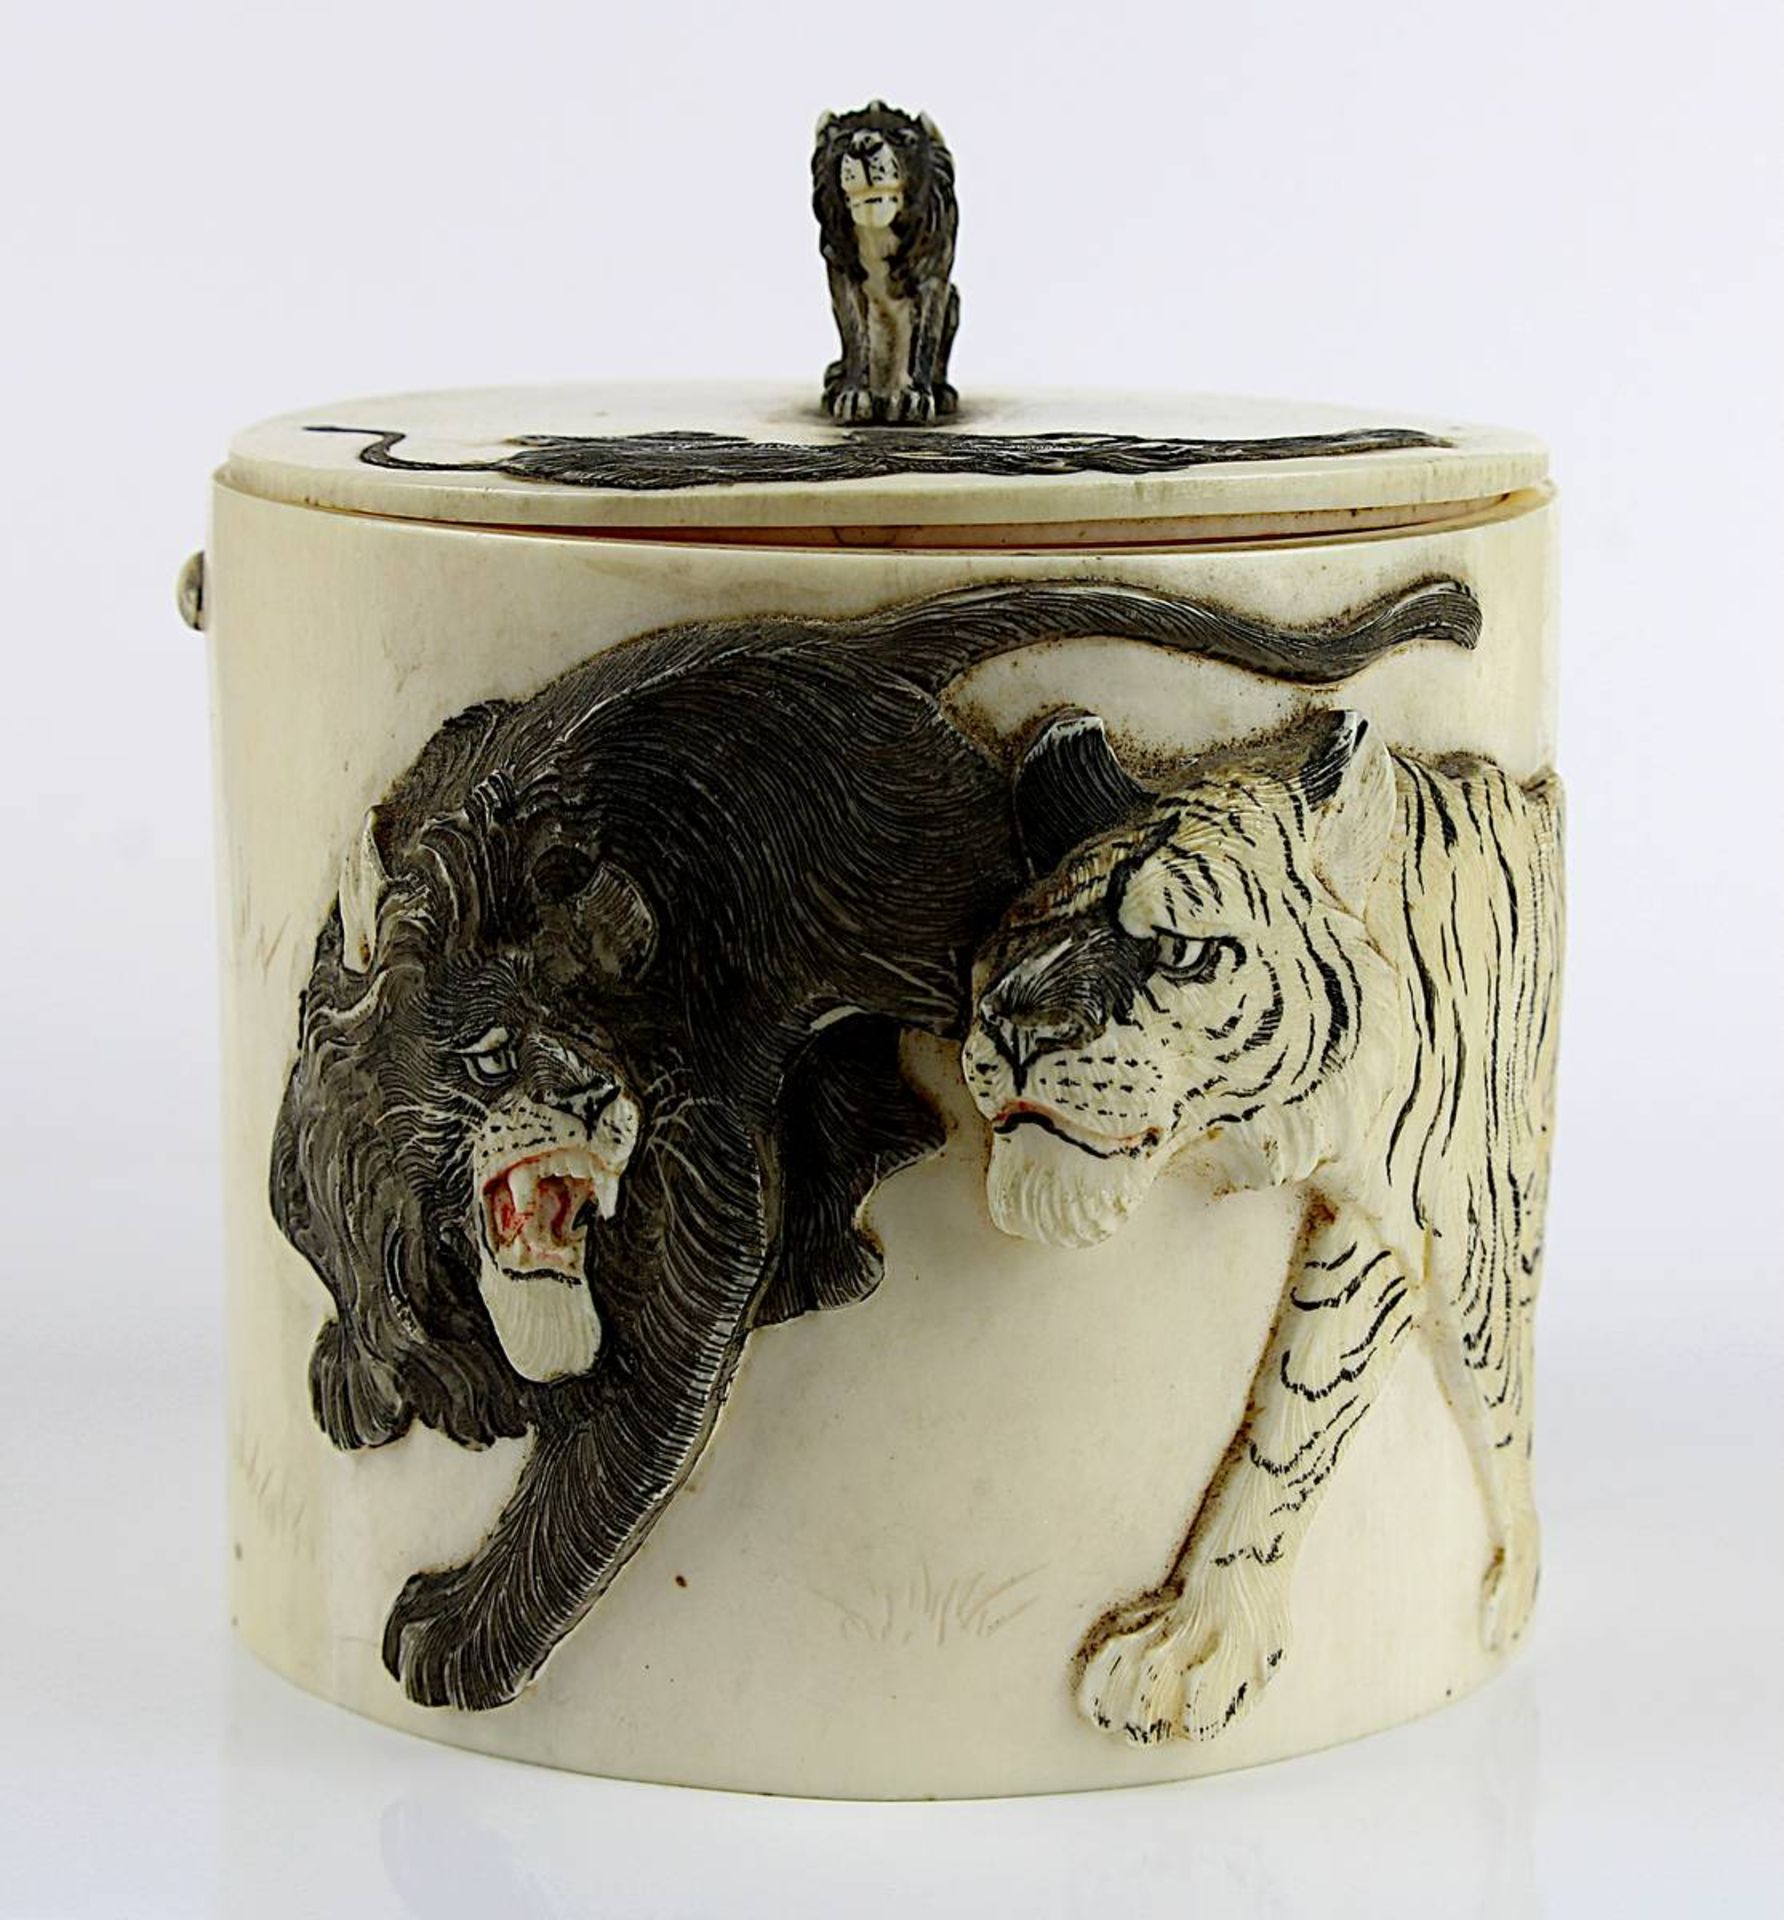 Japanische Elfenbein-Dose mit Tigermotiven, späte Edo-Zeit, zylindrische Form, Deckel und Wandung - Bild 3 aus 7